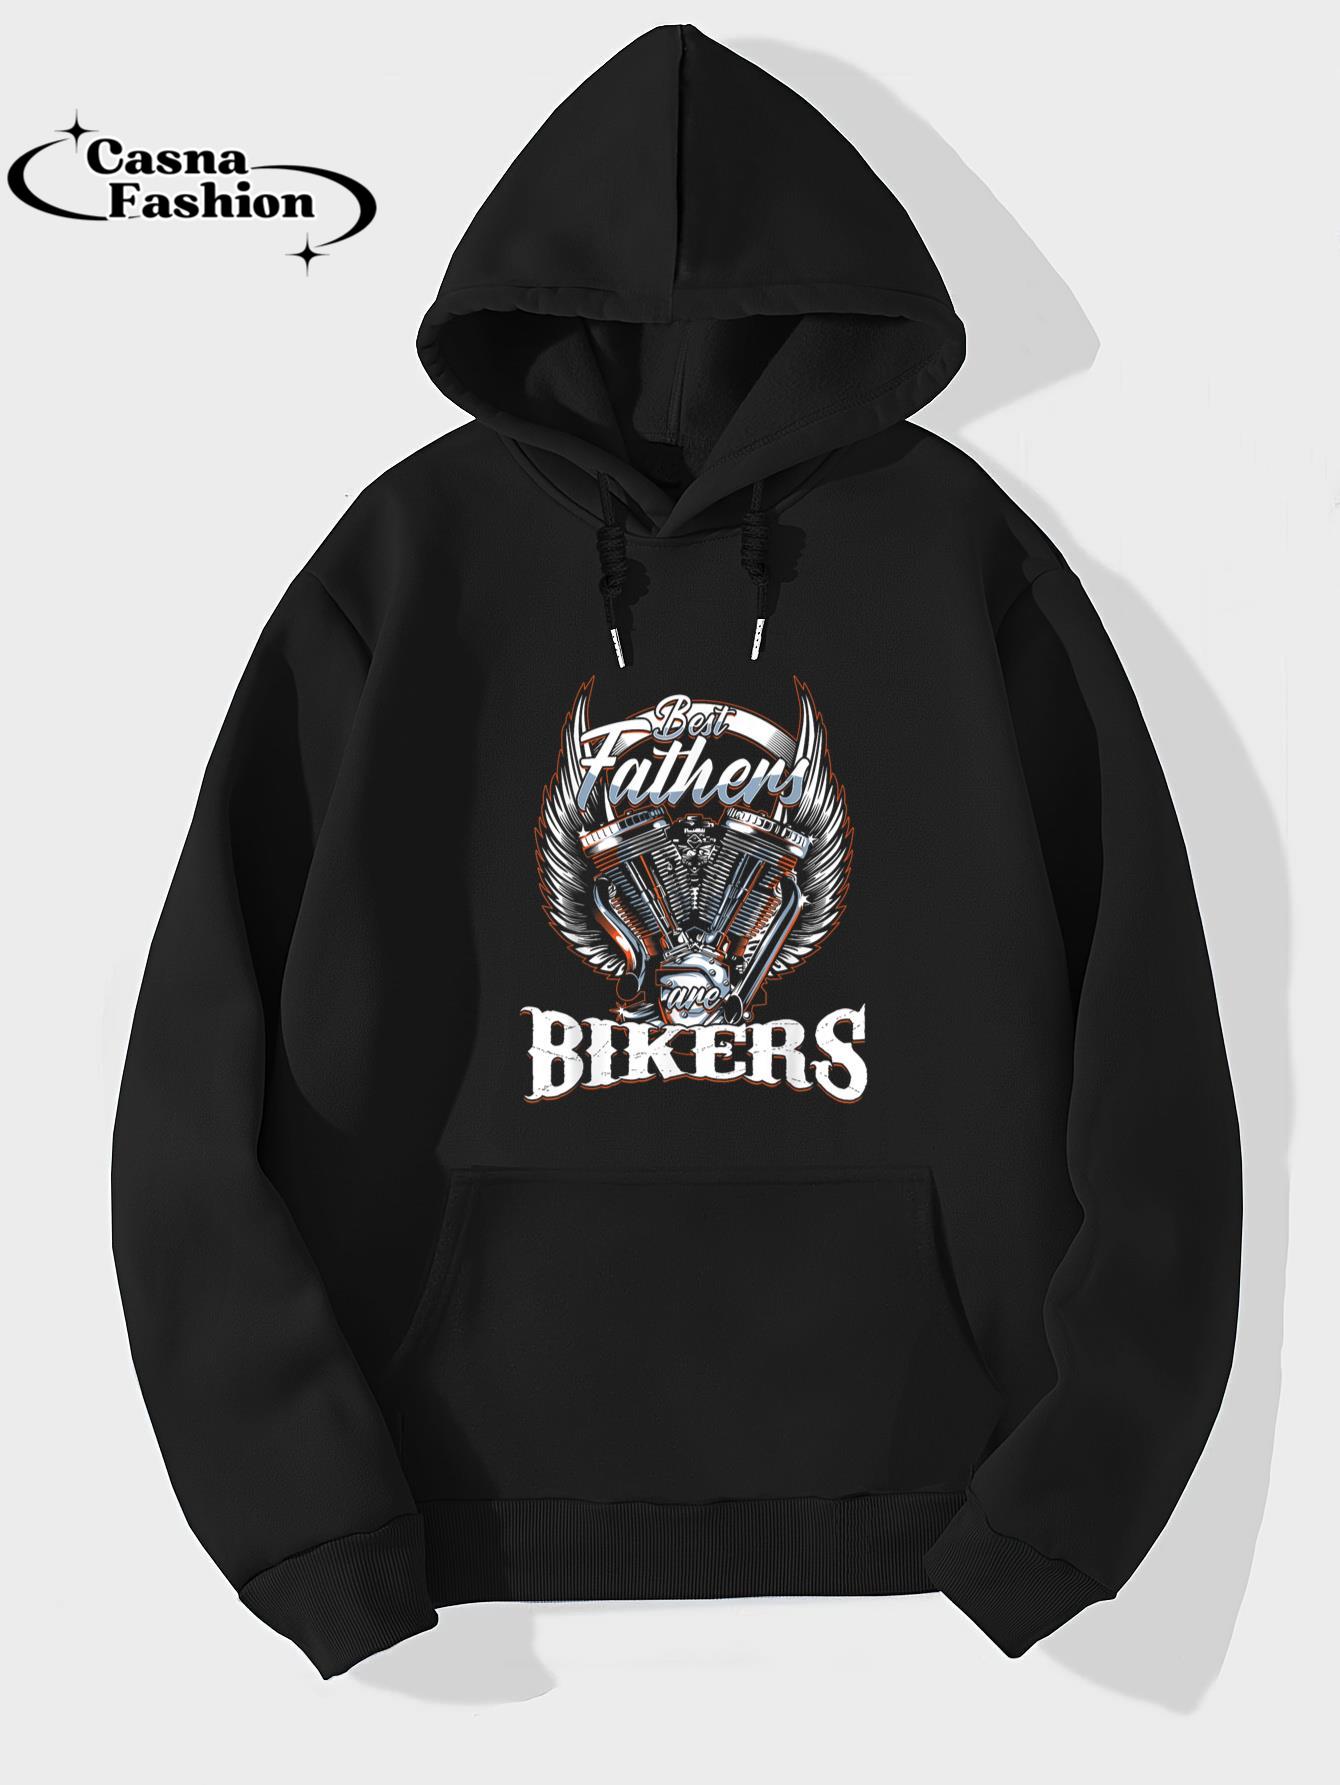 casnafashion_Hoodie_Best Father Motor Biker Motorcycle Motorcycle Rider Gift T-Shirt_hoodie_black hoodie